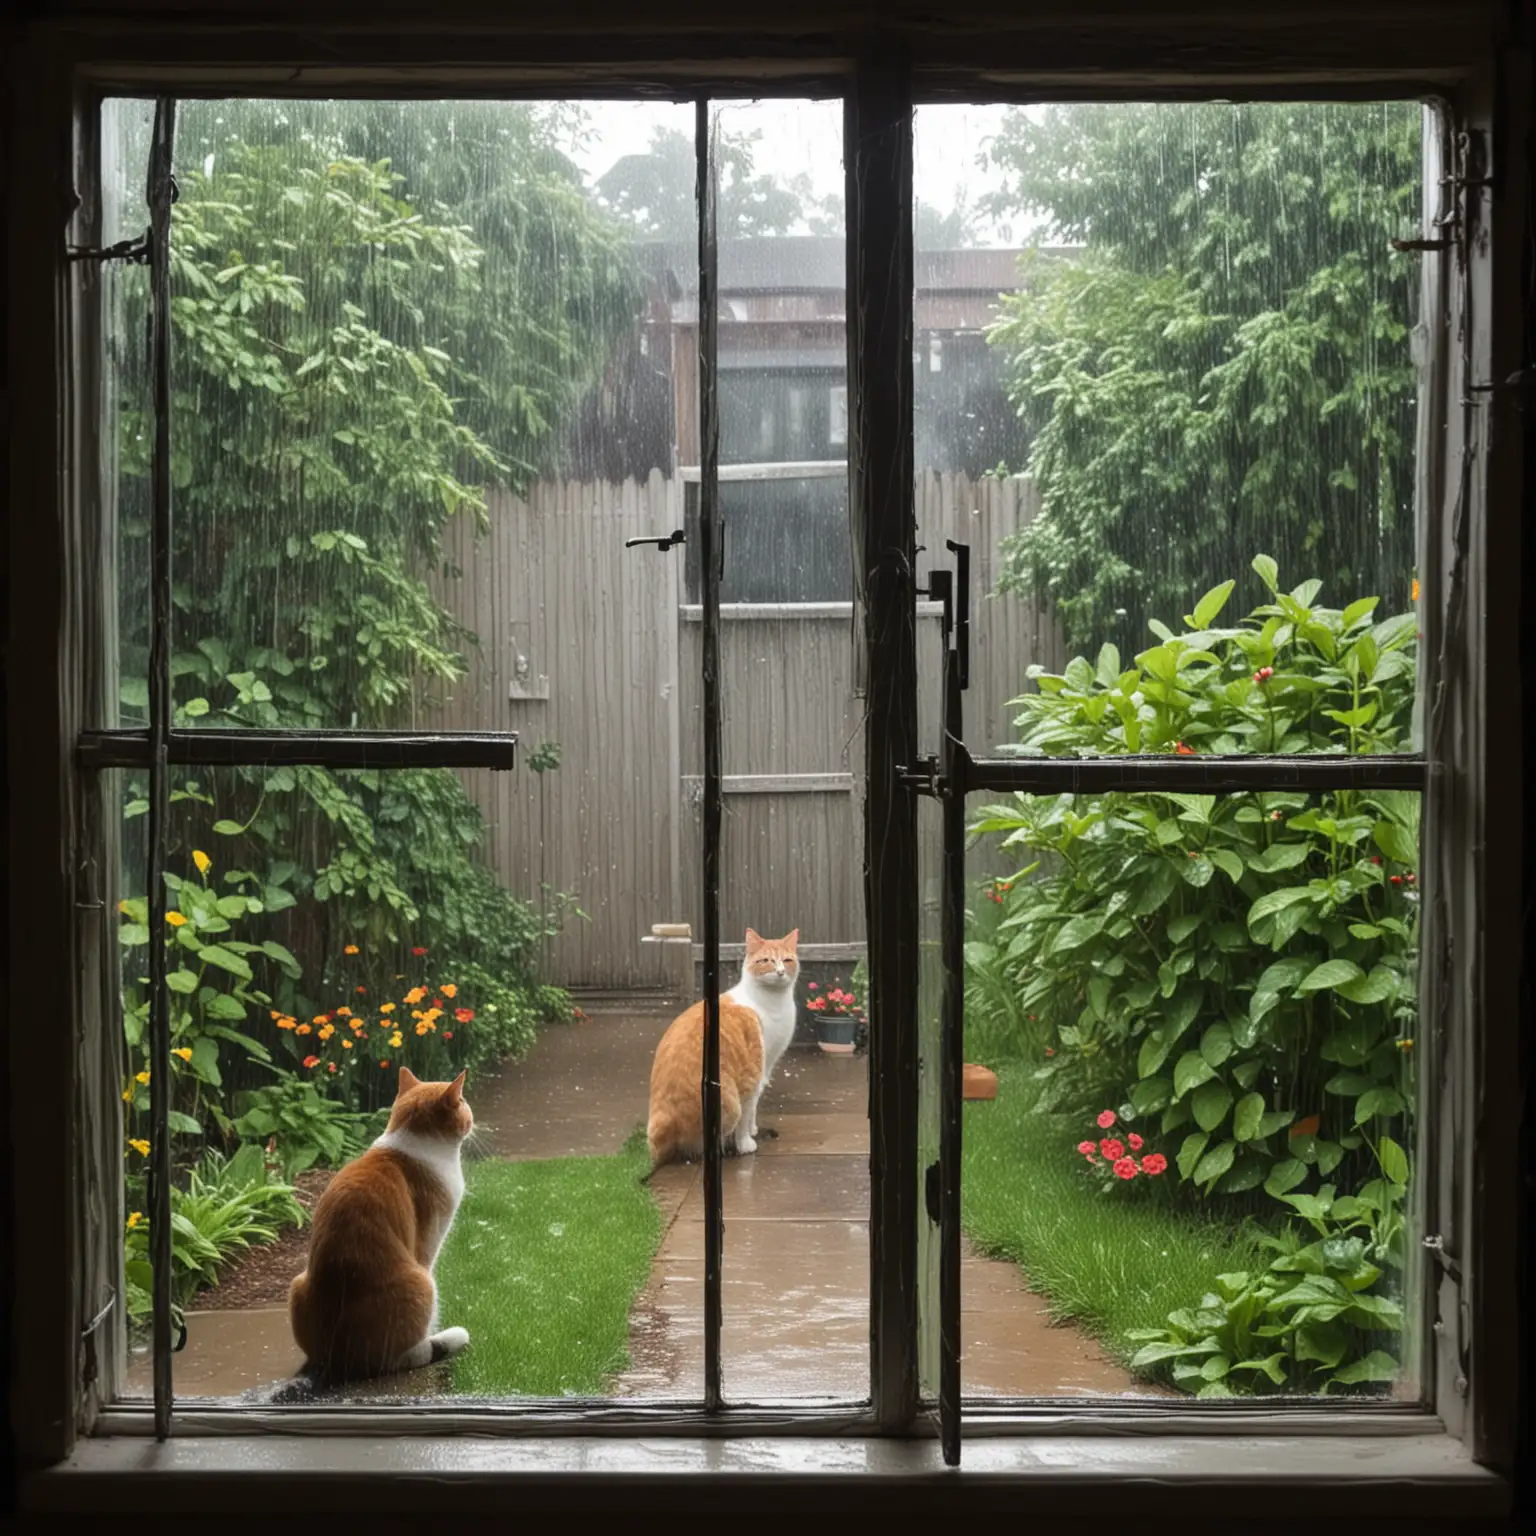 Blick durch ein Fenster zum
Hinterhof
es regnet
zwei katze suchen Schutz
Sonne scheint durch Regenwolken
Gartentor ist verschlossen
kein Ausweg